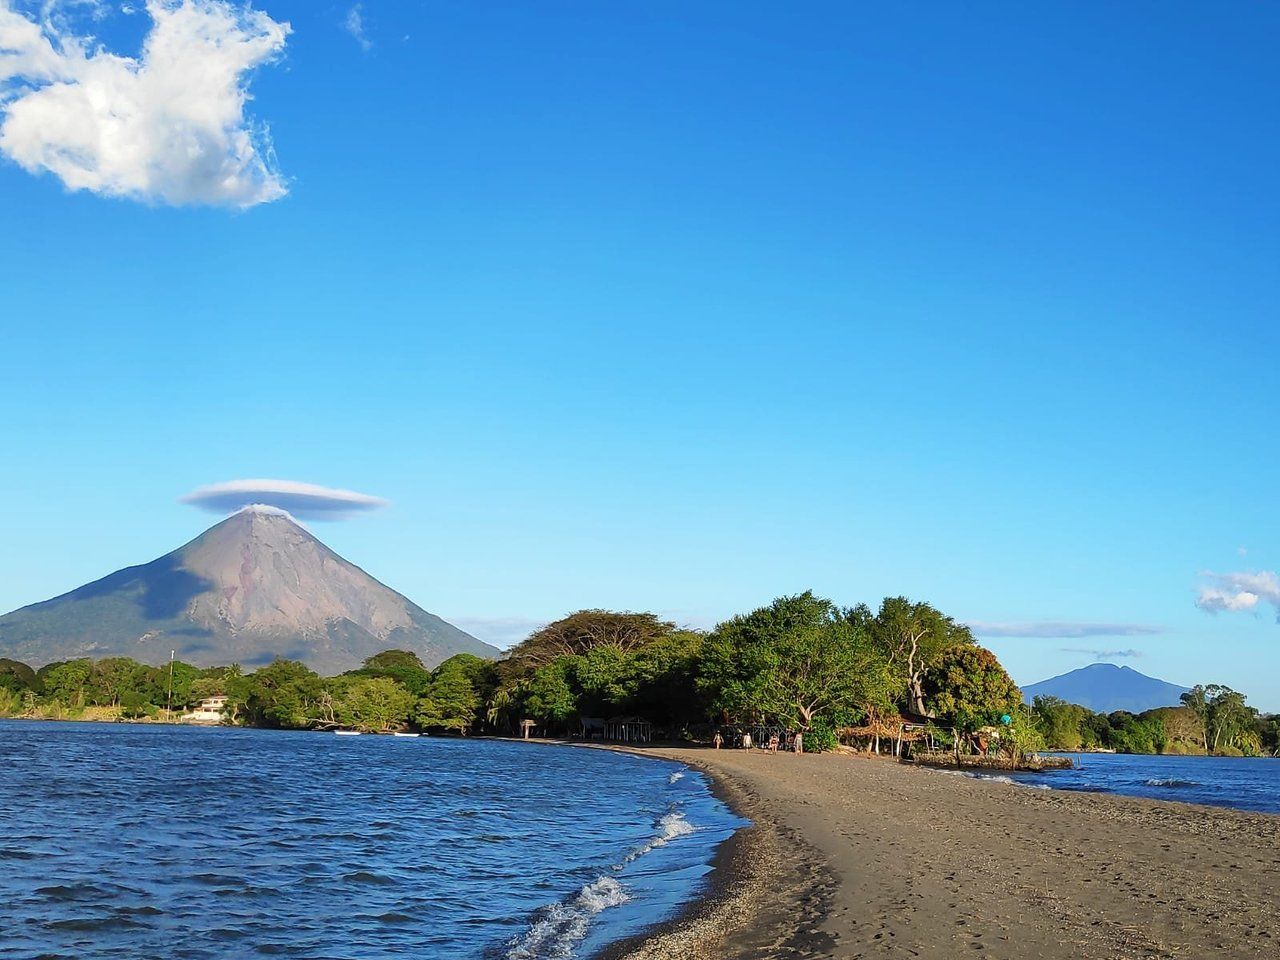 Entdecken Sie die versteckte Schönheit von Punta Jesus Maria in Nicaragua.